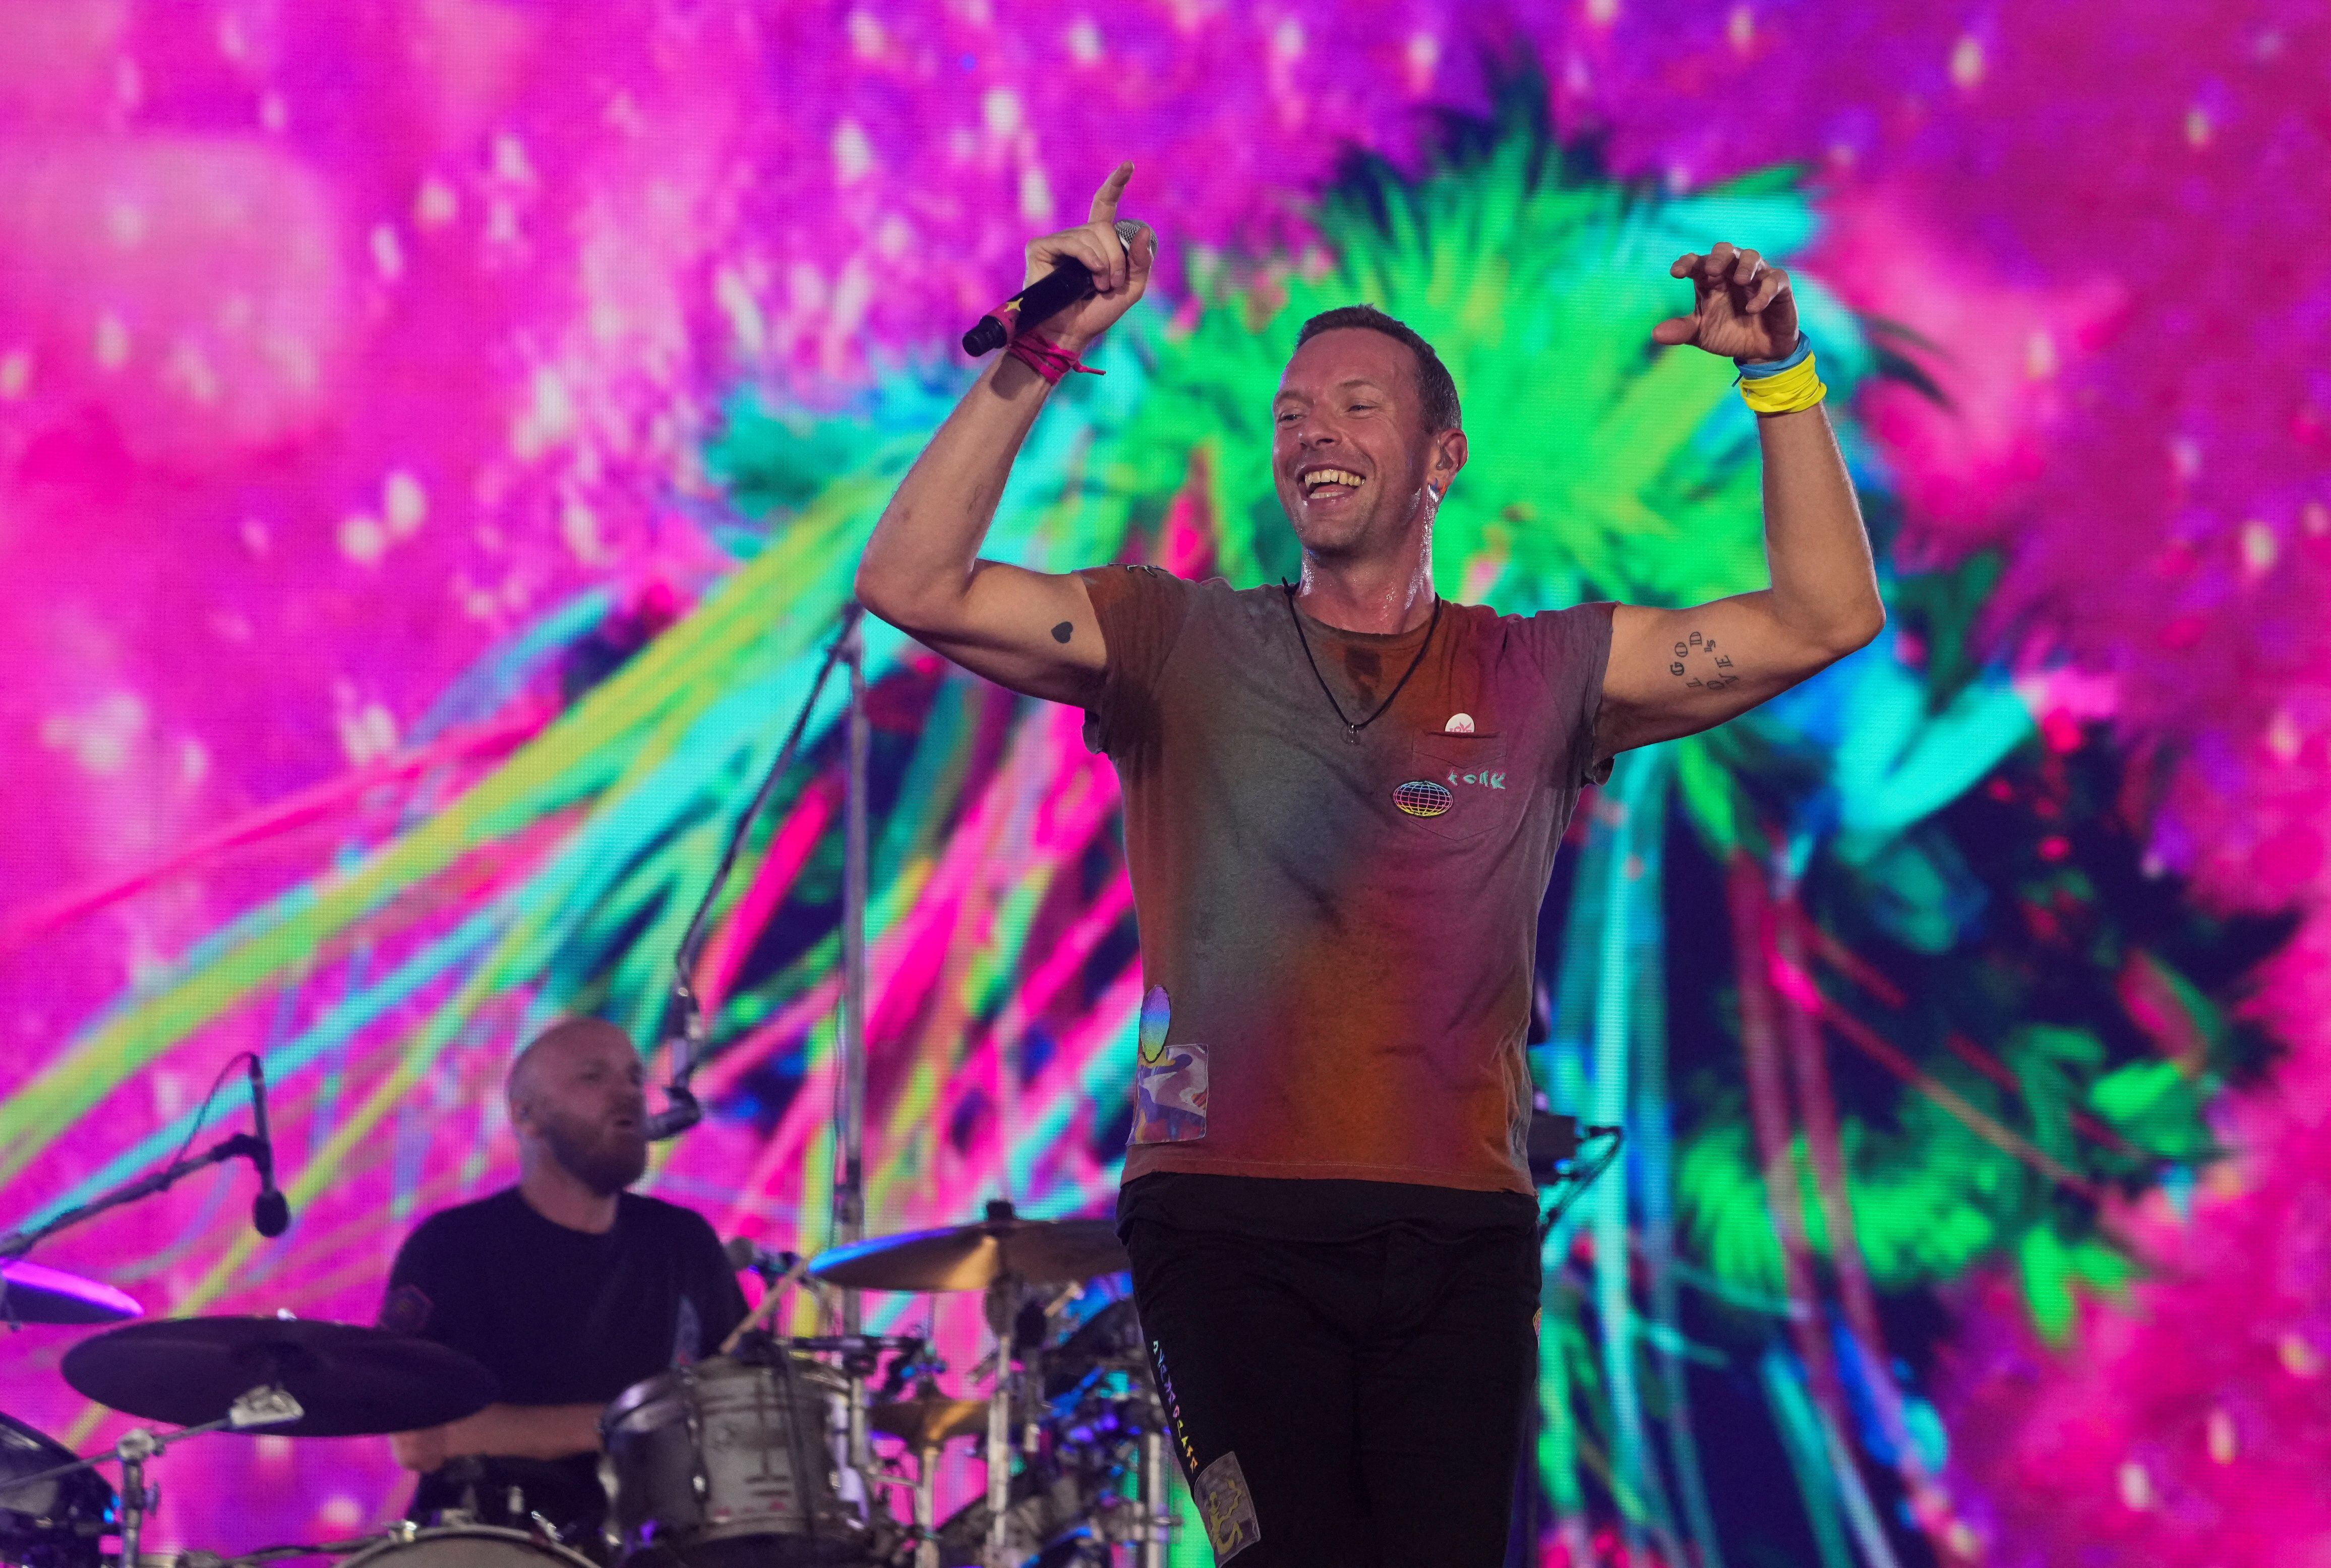 Chris Martin de Coldplay. Infobae Colombia le cuenta algunos datos que quizá no conocía sobre el artista que se presentará este 16 y 17 de septiembre en Bogotá. REUTERS/Maja Smiejkowska